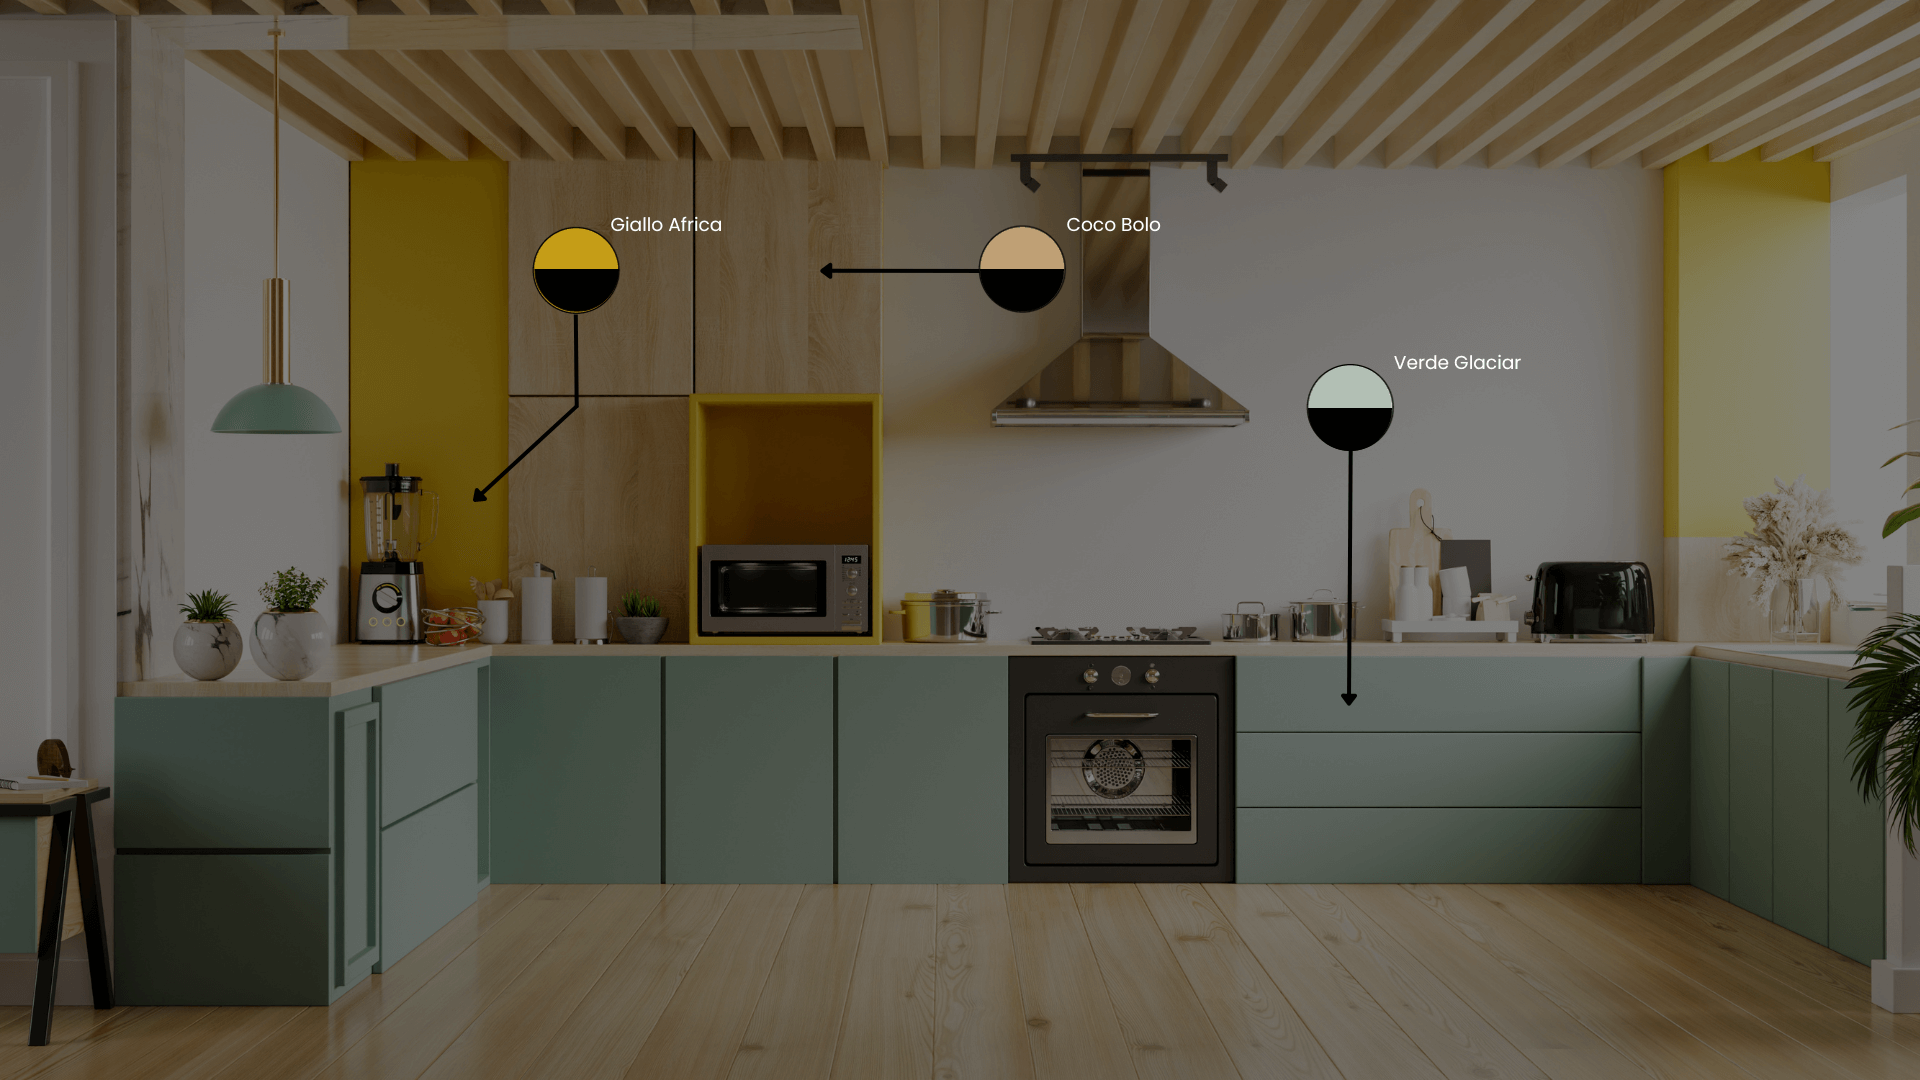 robfu-imagen cocina moderna con indicadores-1920x1080-50%-con letras-tiny-1